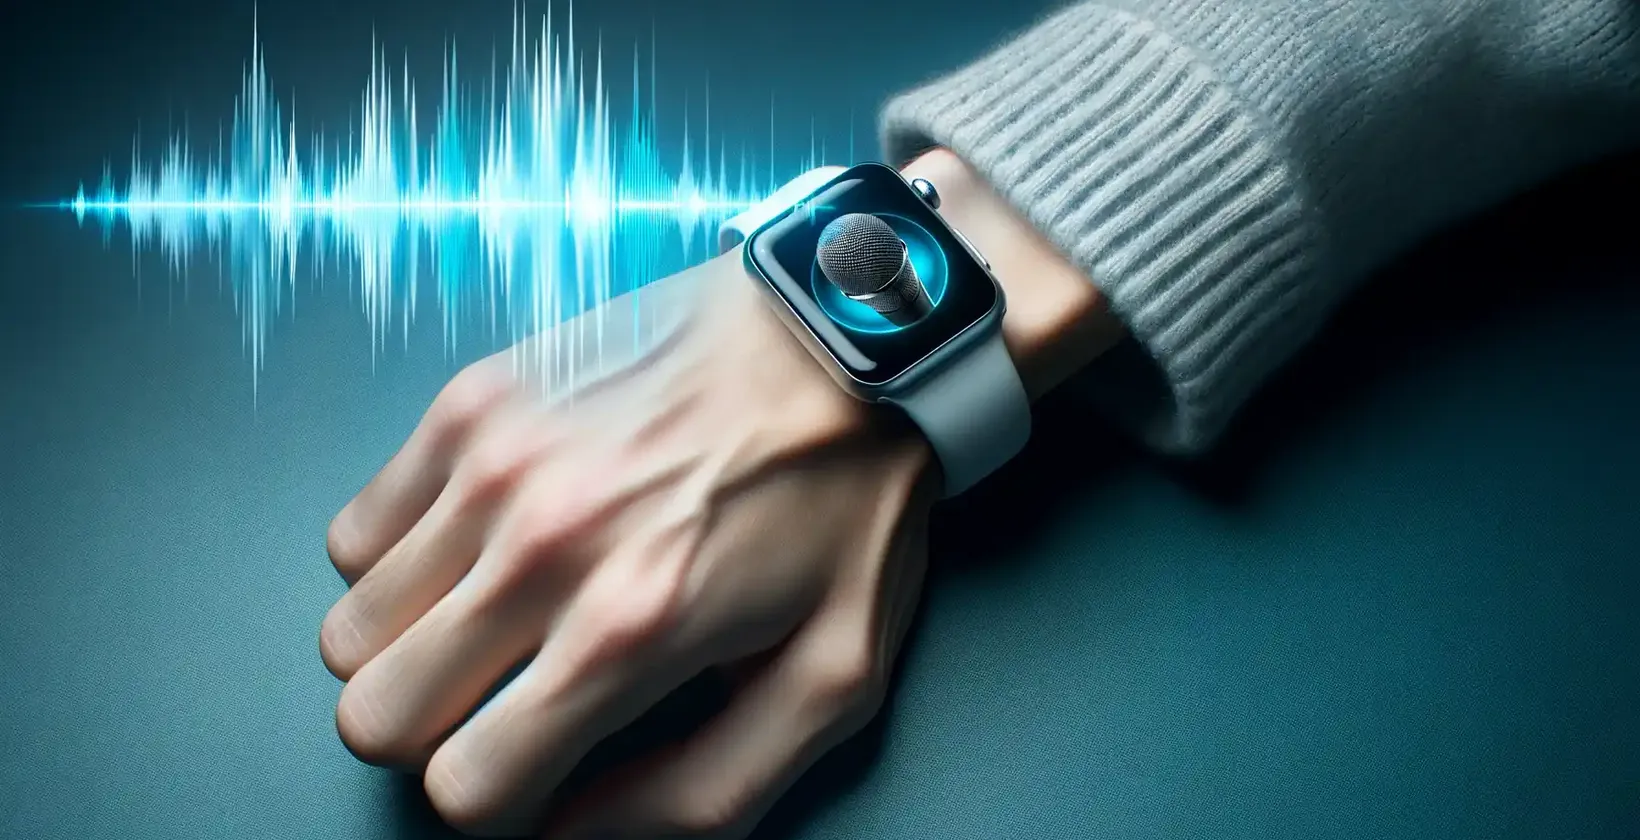 Um close-up do pulso de uma pessoa usando um Apple Watch exibindo um ícone de microfone, indicando o modo de ditado